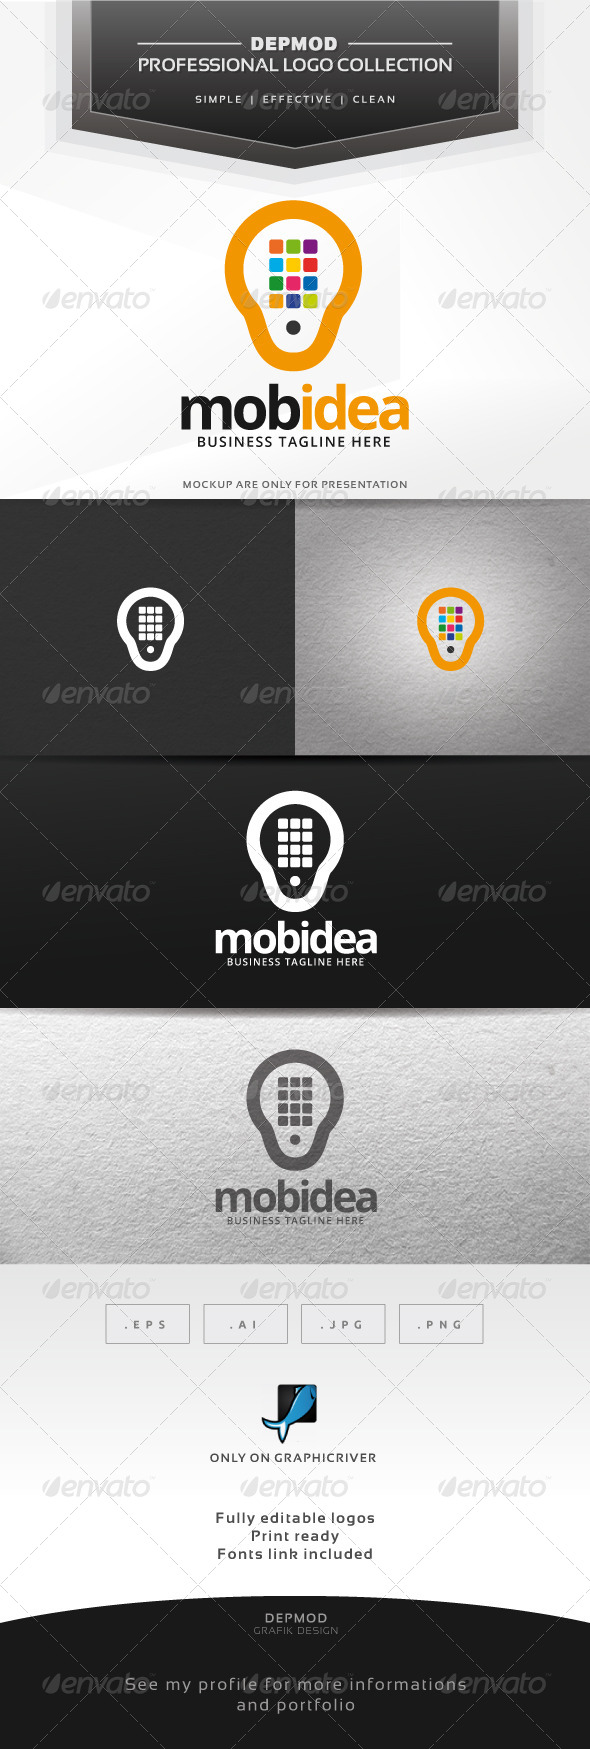 Mobidea Logo